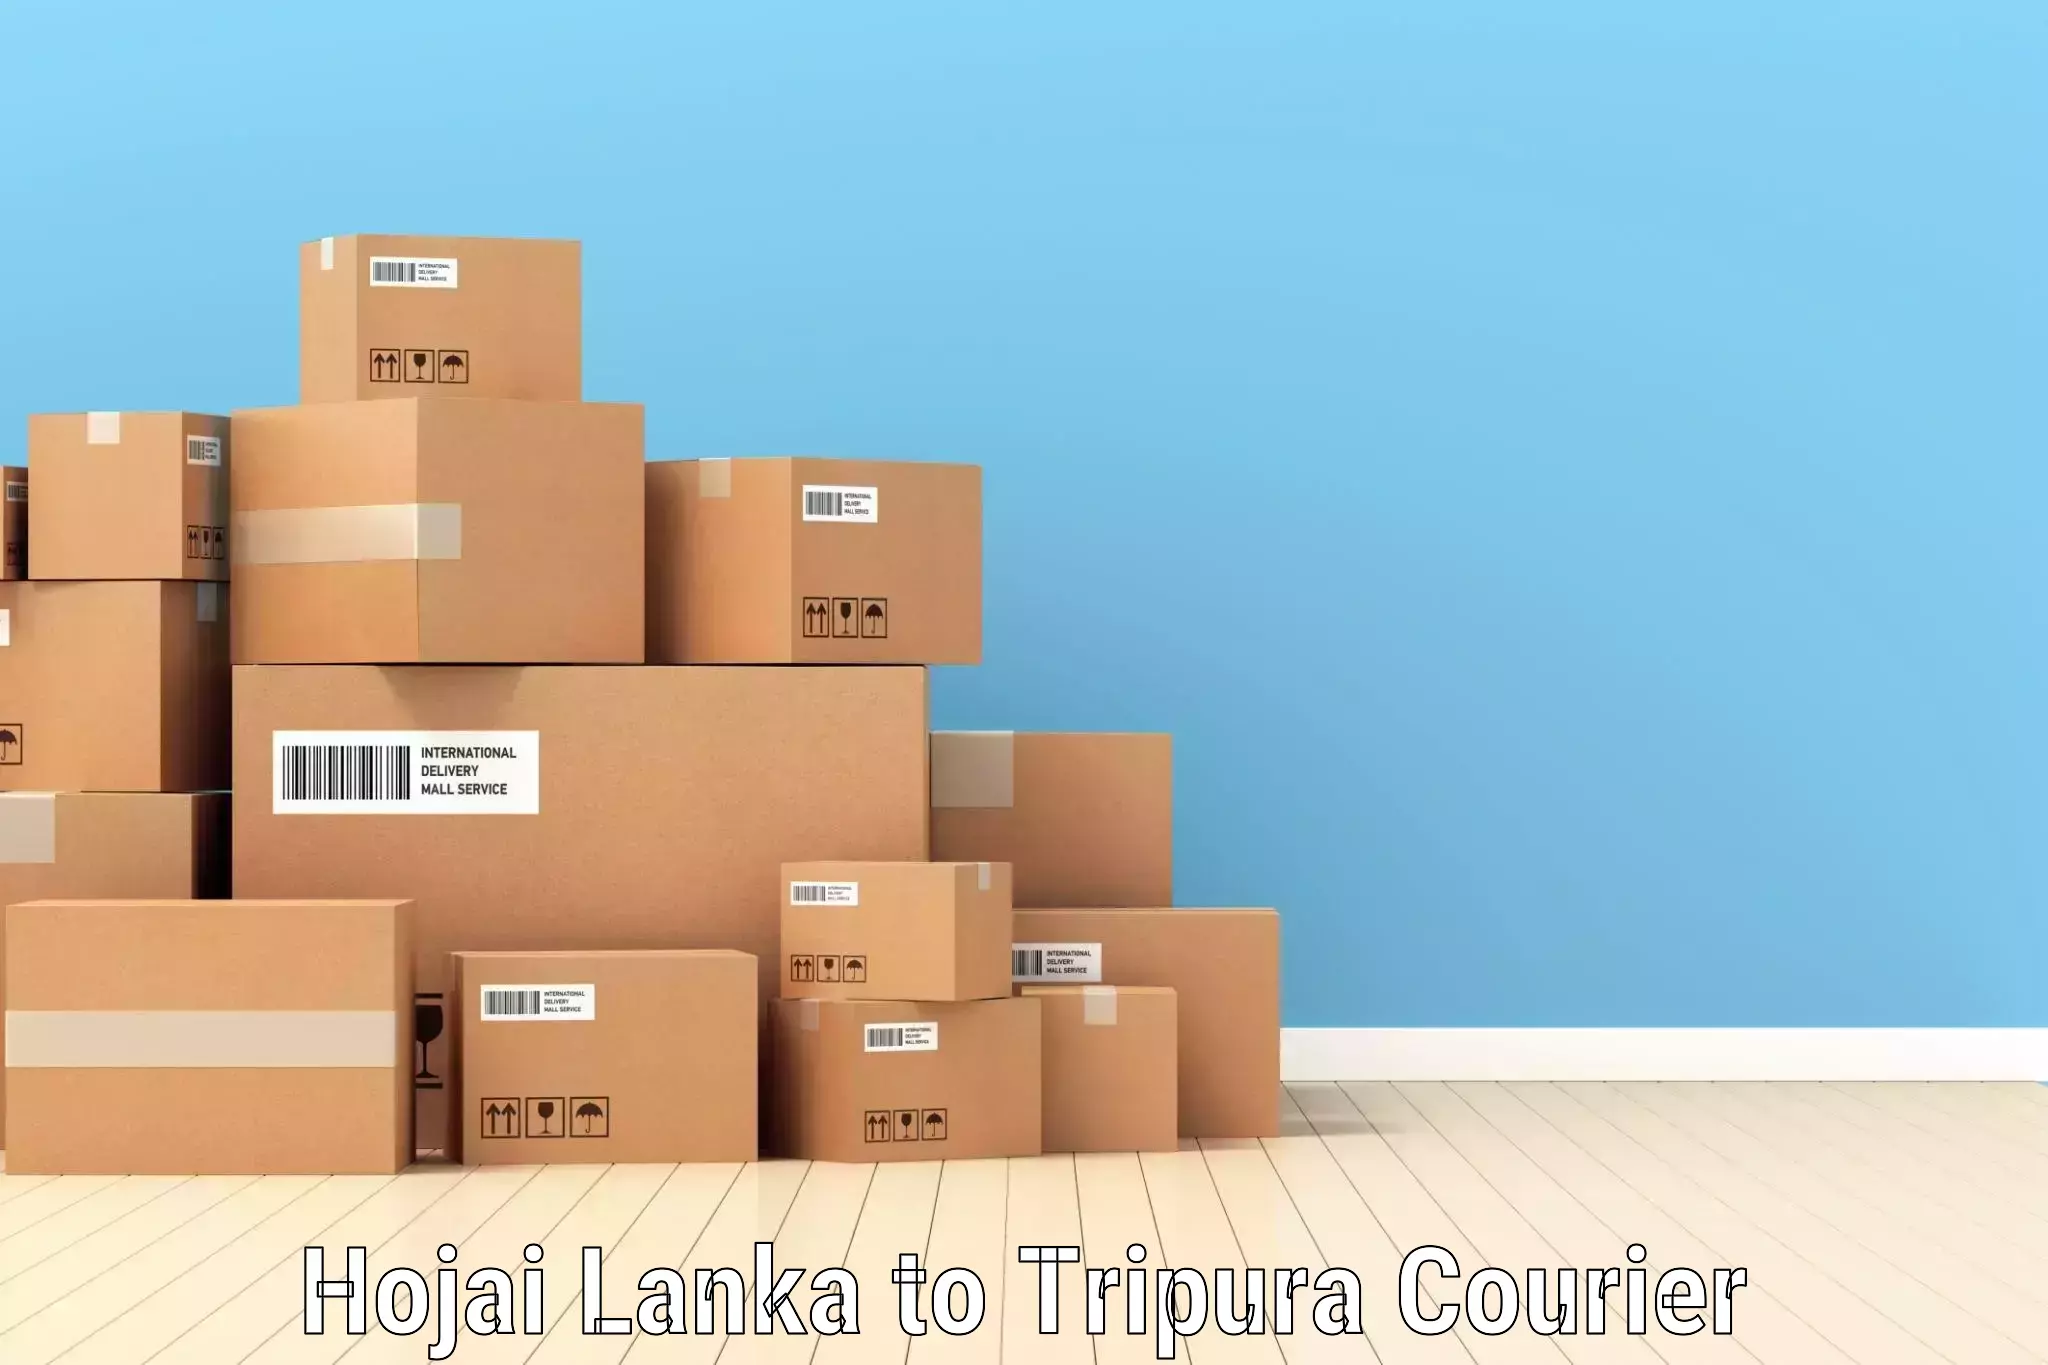 Premium courier solutions Hojai Lanka to Amarpur